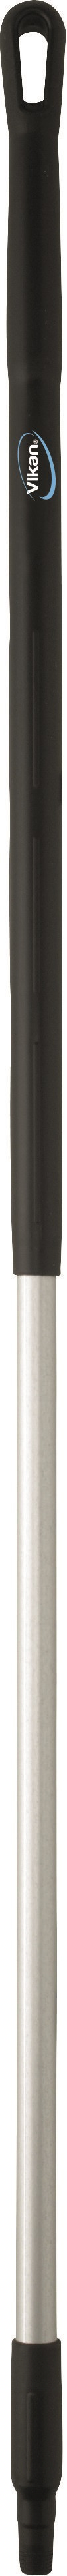 Vikan Aluminiumsskaft 1510 mm Ø31mm Sort Med gevind (29379)